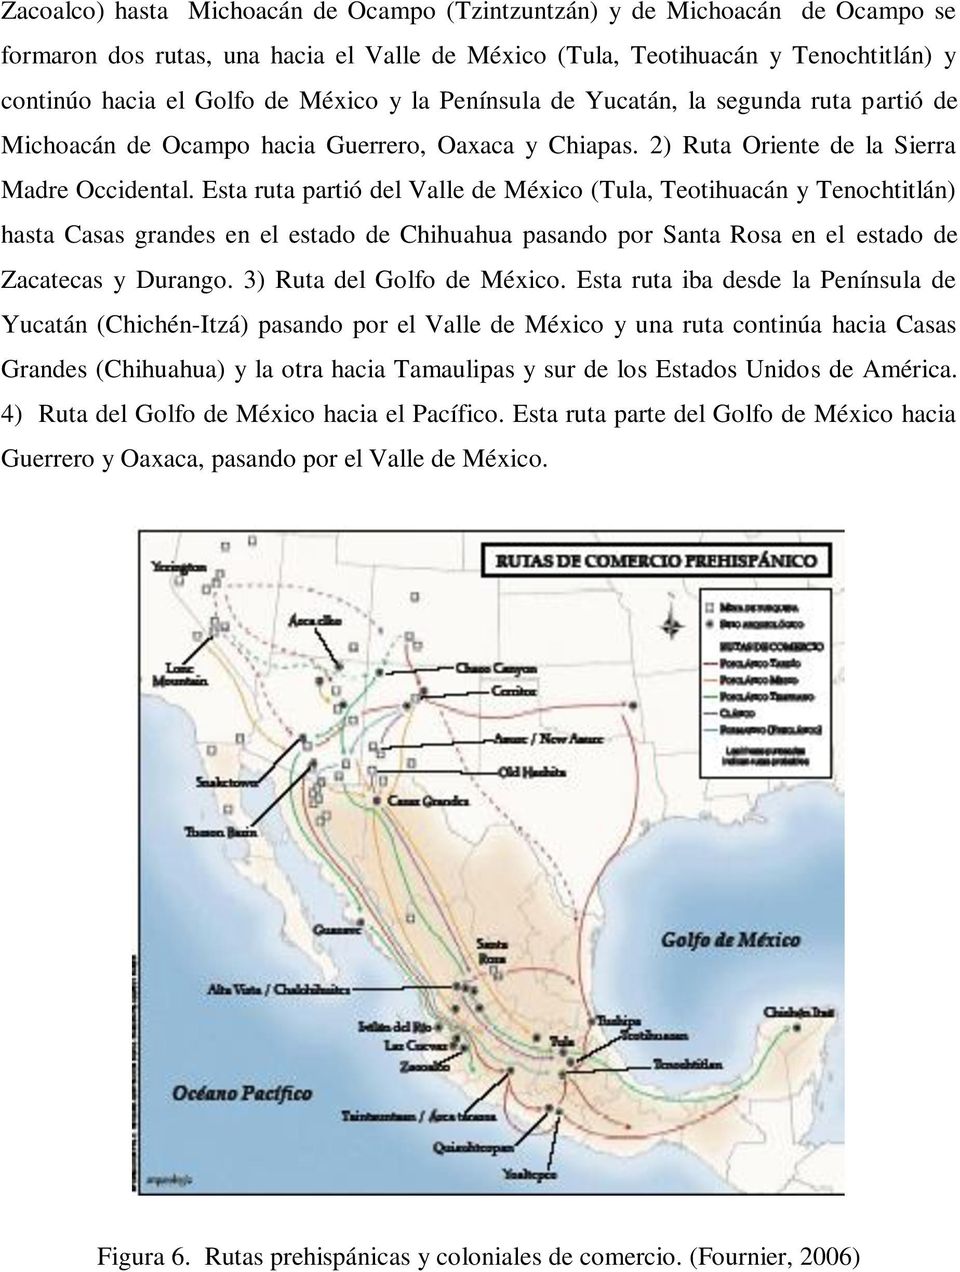 Esta ruta partió del Valle de México (Tula, Teotihuacán y Tenochtitlán) hasta Casas grandes en el estado de Chihuahua pasando por Santa Rosa en el estado de Zacatecas y Durango.